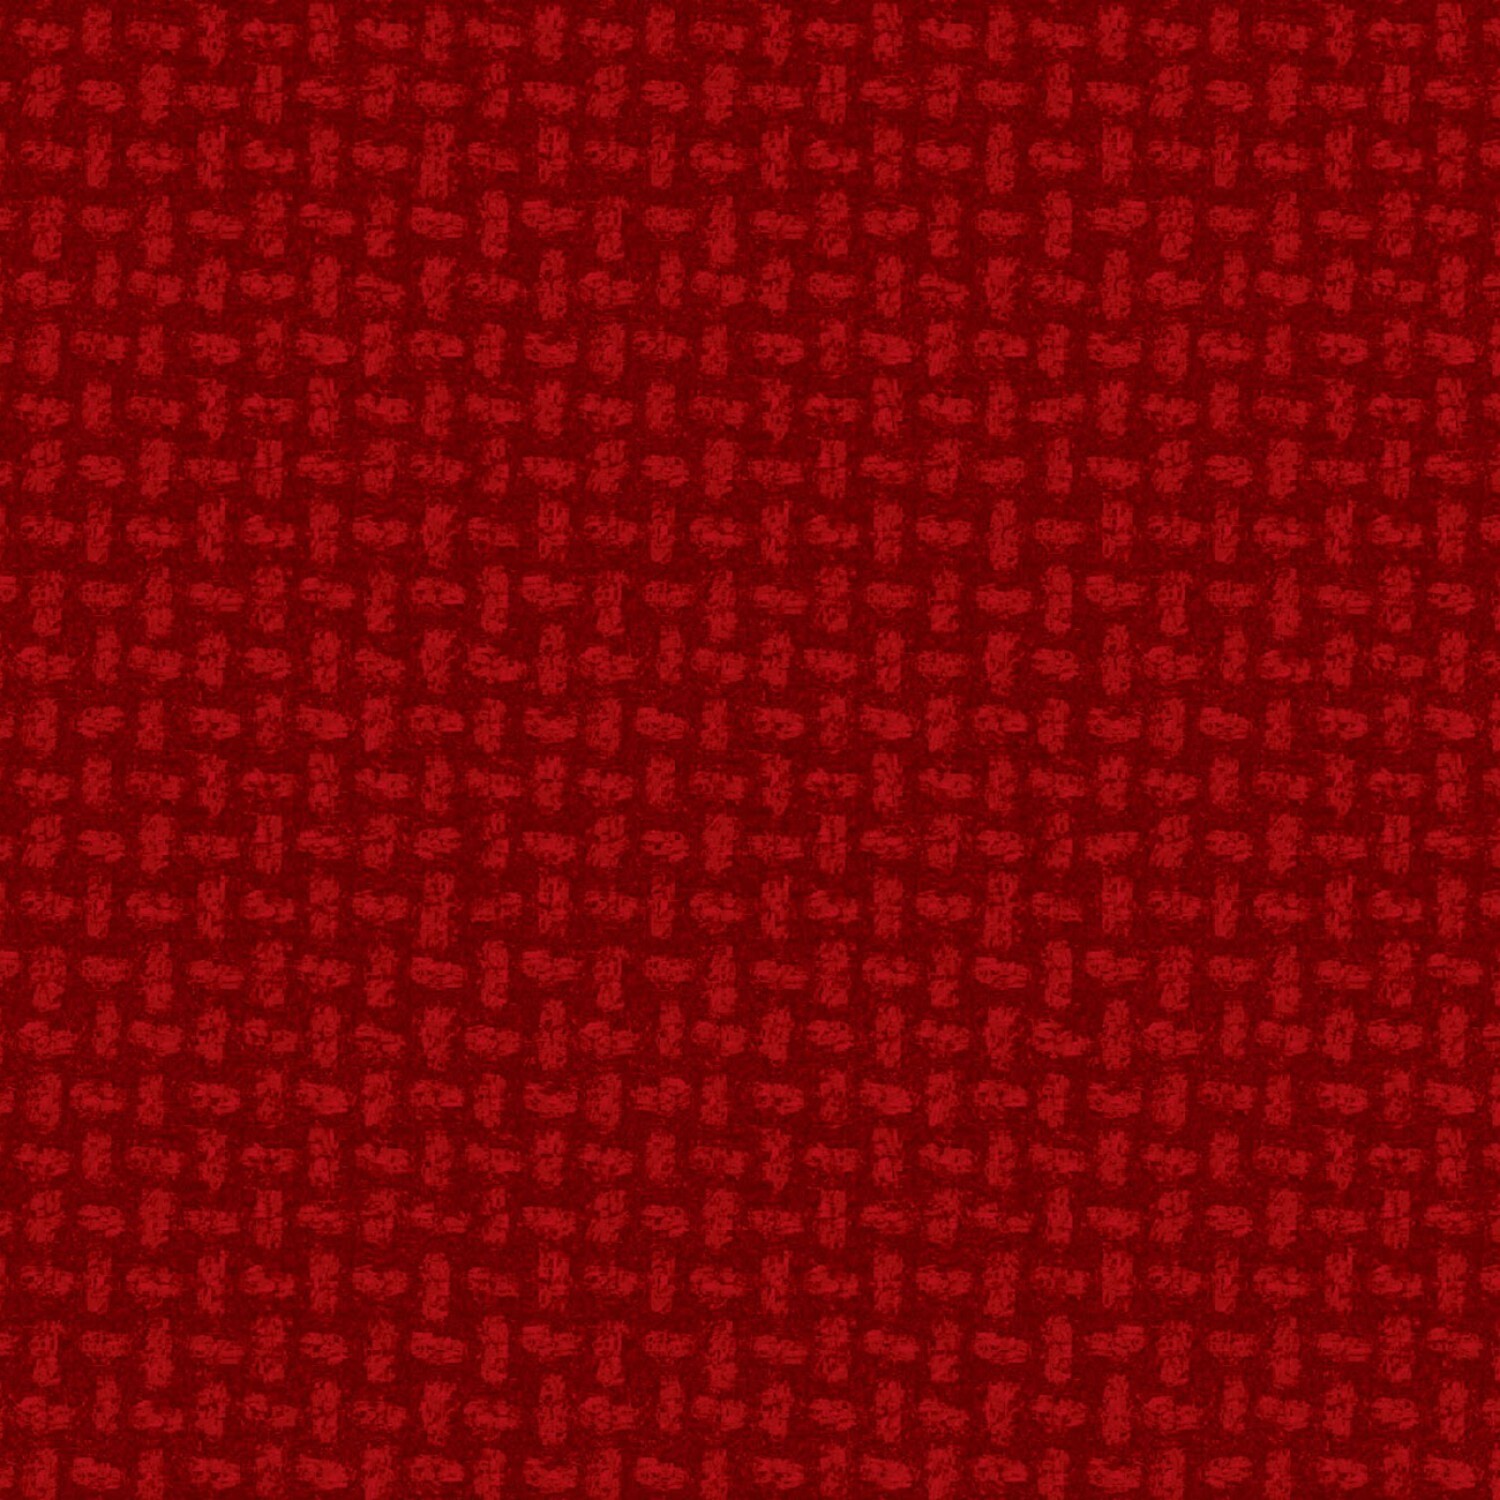 Woolies Flannel - Red Basketweave - 1/2m cut 59000